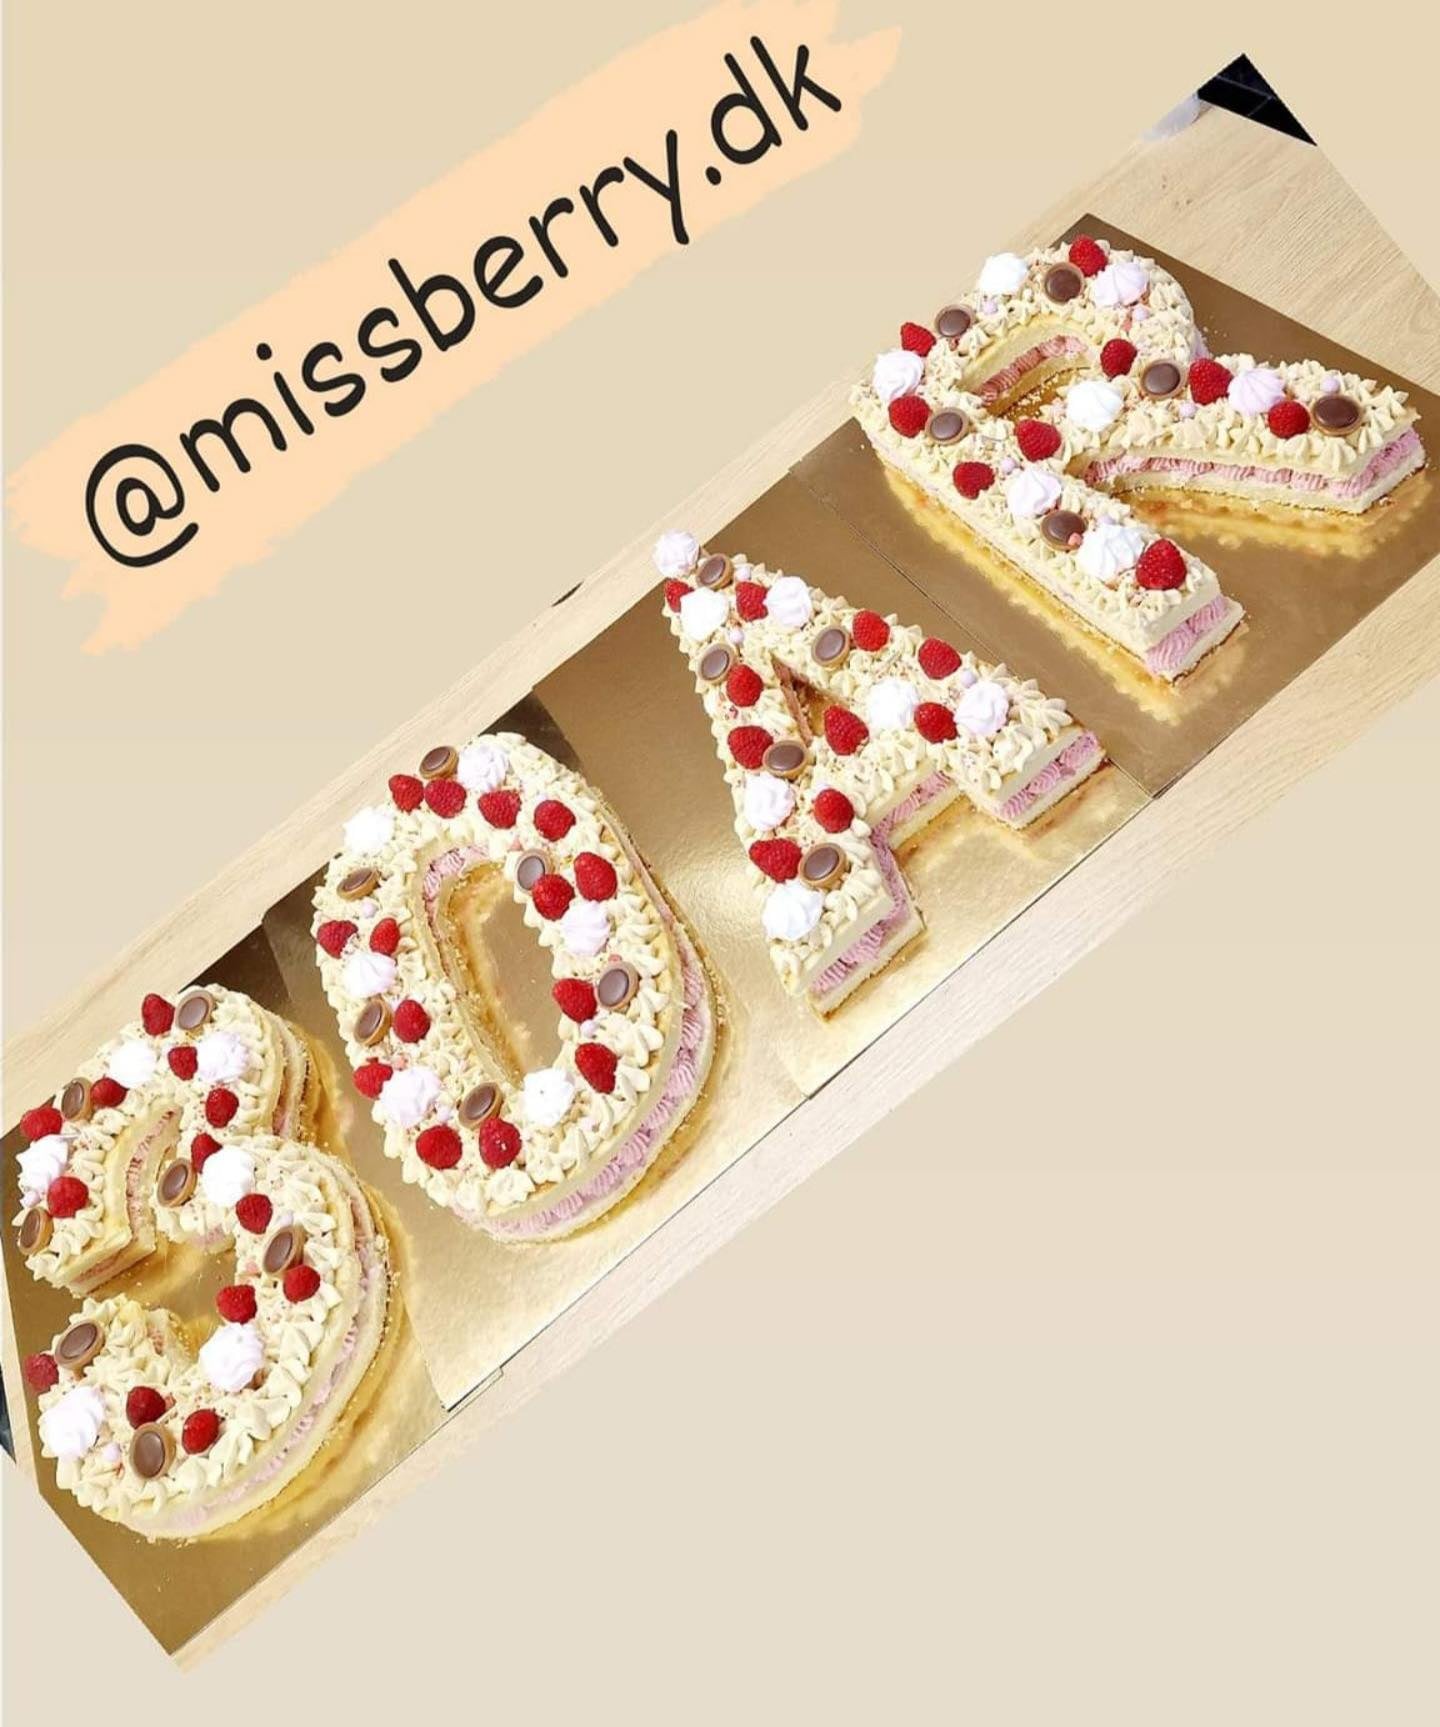 #talkage#kagetapas#chokoladeovertruknejordbær#Kagebord#Bryllupskage#Bryllupskager#Dåbskage#Cupcakes#Fødselsdagskage#Kagepynt#chokolade#cupcakes#bryllupskage #jordbær med chokolade#bestil kage#kage til barnedåb#barnedåbskage#bestil kage online, #tapas kager#fødselsdags kage#fødselsdagskager#bestil lagkage#små kager til fest#kage fødselsdag#dåbskager#bestil fødselsdagskage#kage til børnefødselsdag#fødselsdagskage bestil#bestil kage til fødselsdag#kage barnedåb#1 års fødselsdag kage#kage til 1 års fødselsdag#festkager#kage chokolade#lagkage#chokolade#kage til fest#kage til fødselsdag #bestil fødselsdagskage 1 år#kage børnefødselsdag#cupcake#barnedåbs kage#jordbær chokolade#bestil kage til festen#chokolade #fødselsdagskage#kager og desserter#konfirmations kage#mors dag kage#jordbær kager#bestil cupcakes#bestil en kage#kage bord#bestil kage til barnedåb#barnedåbskager#fest kager,#bestil bryllupskage#jordbær med chokoladeovertræk#kage tapas#festlige kager#bestil dåbskage#kage til reception#kagebord til barnedåb#chokolade med jordbær#bestil jordbær med chokolade#fars dags kage#bestil cupcakes online#chokoladekage#cupcakes til barnedåb#¤kage fest#cupcakes fødselsdag#bestil kagebord#kager til kagebord# bryllups cupcakes#1 års fødselsdags kage#kagebord konfirmation#små kager til barnedåb#muffins barnedåb, kageborde# barnedåb kagebord# barnedåbskage pris#kage bryllup#bestil barnedåbskage#flot kage til fødselsdag#bryllupskage bestilling#kage til mors dag#små kager til fødselsdag# kagebord til fest#køb dåbskage"#kager til studenterfest#chokolade til jordbær# cupcakes #1 års fødselsdag"#bestil kage tapas#priser bryllupskage#købe fødselsdagskage#dåbskage priser#dåbskager priser#bestillings kager#dåbs cupcakes